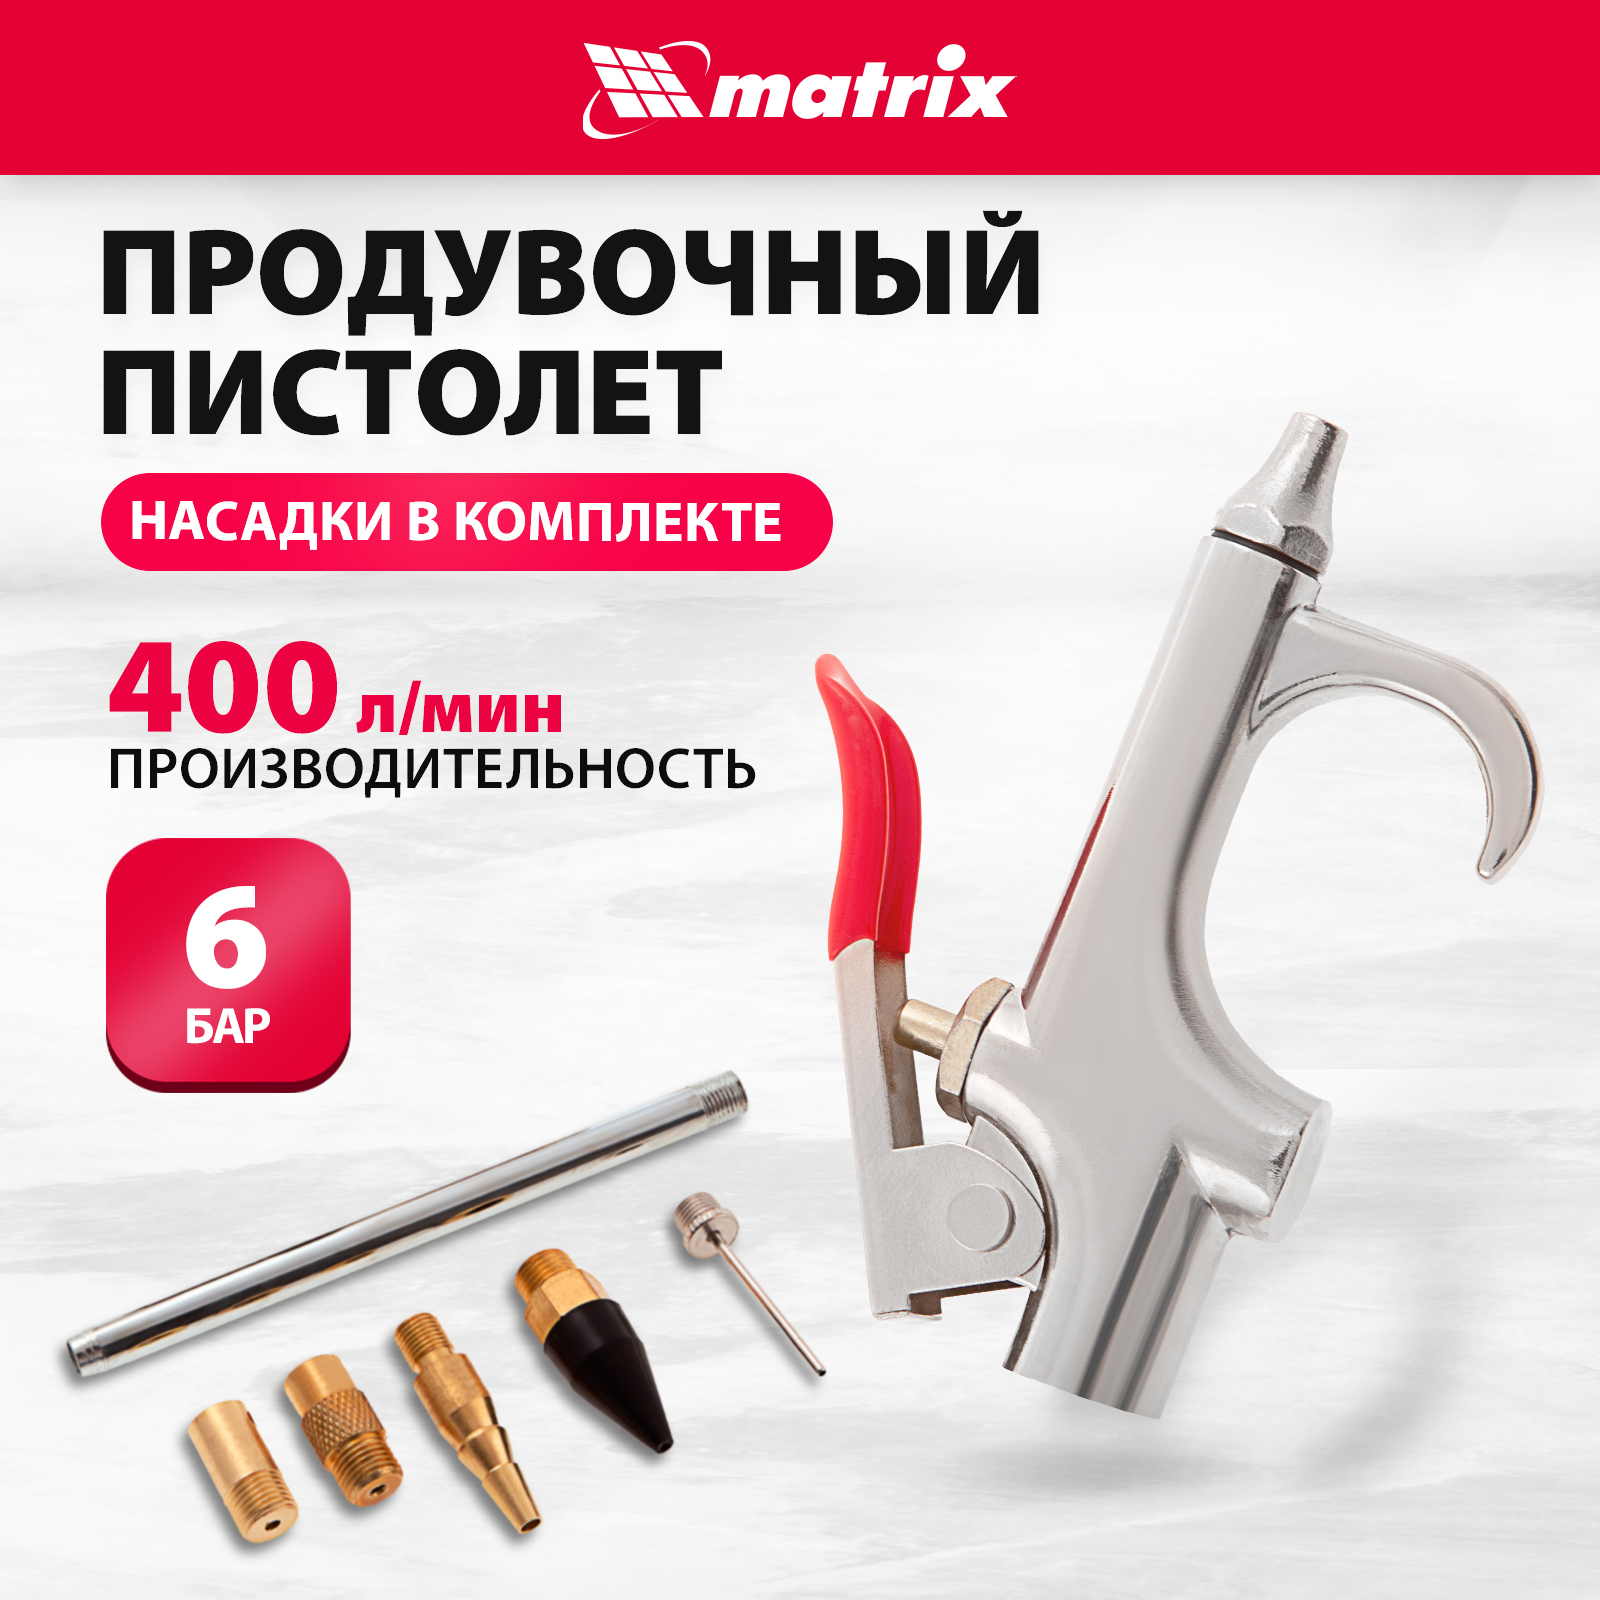 Набор пневматический продувочный пистолет с насадками MATRIX 6 шт 57336 набор пневматический продувочный пистолет с насадками matrix 6 шт 57336